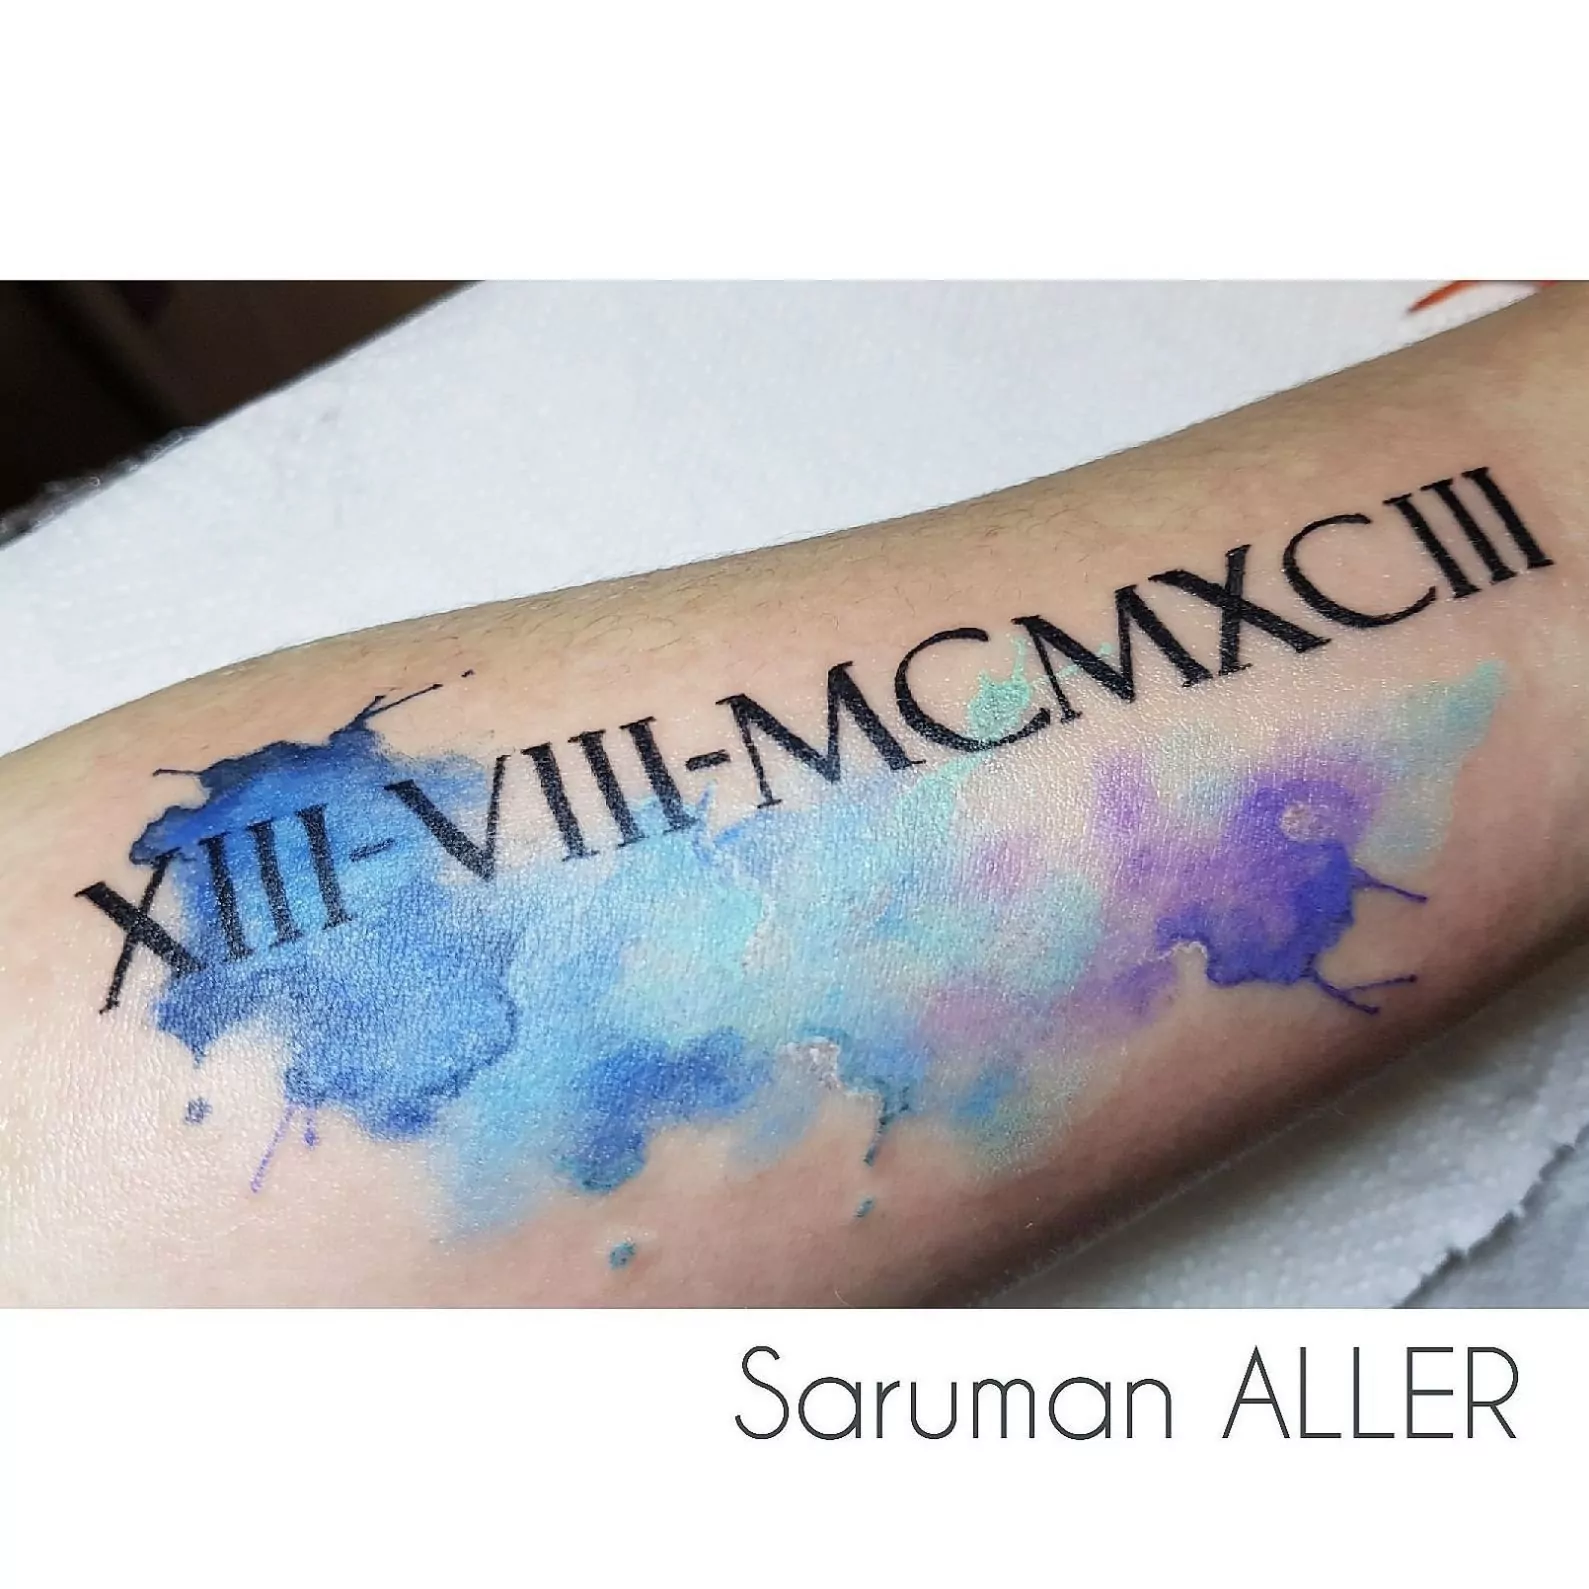 Tatuaje estilo lettering con efecto watercolor en el antebrazo